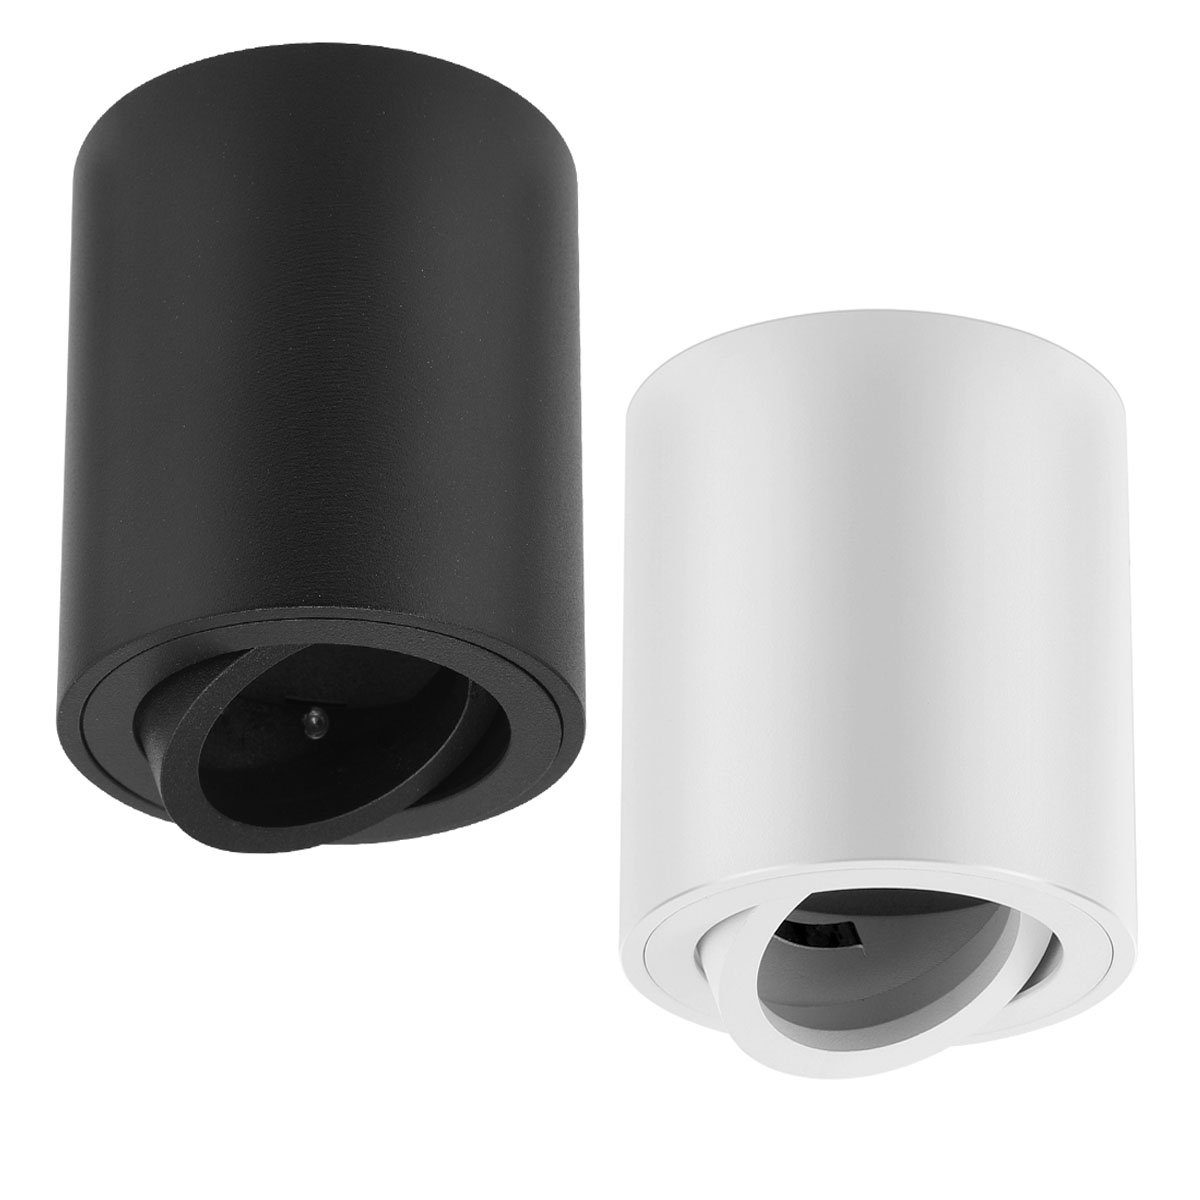 LETGOSPT Deckenstrahler Aufbaustrahler Deckenlampe GU10 Downlight,8.5x8cm Weiß